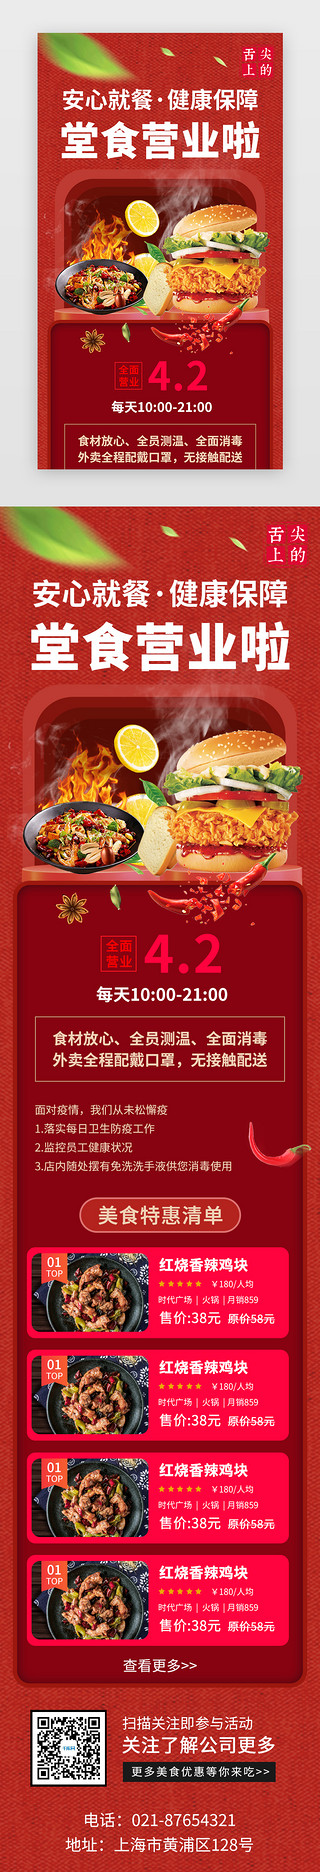 活动宣传UI设计素材_餐饮美食复工促销活动H5